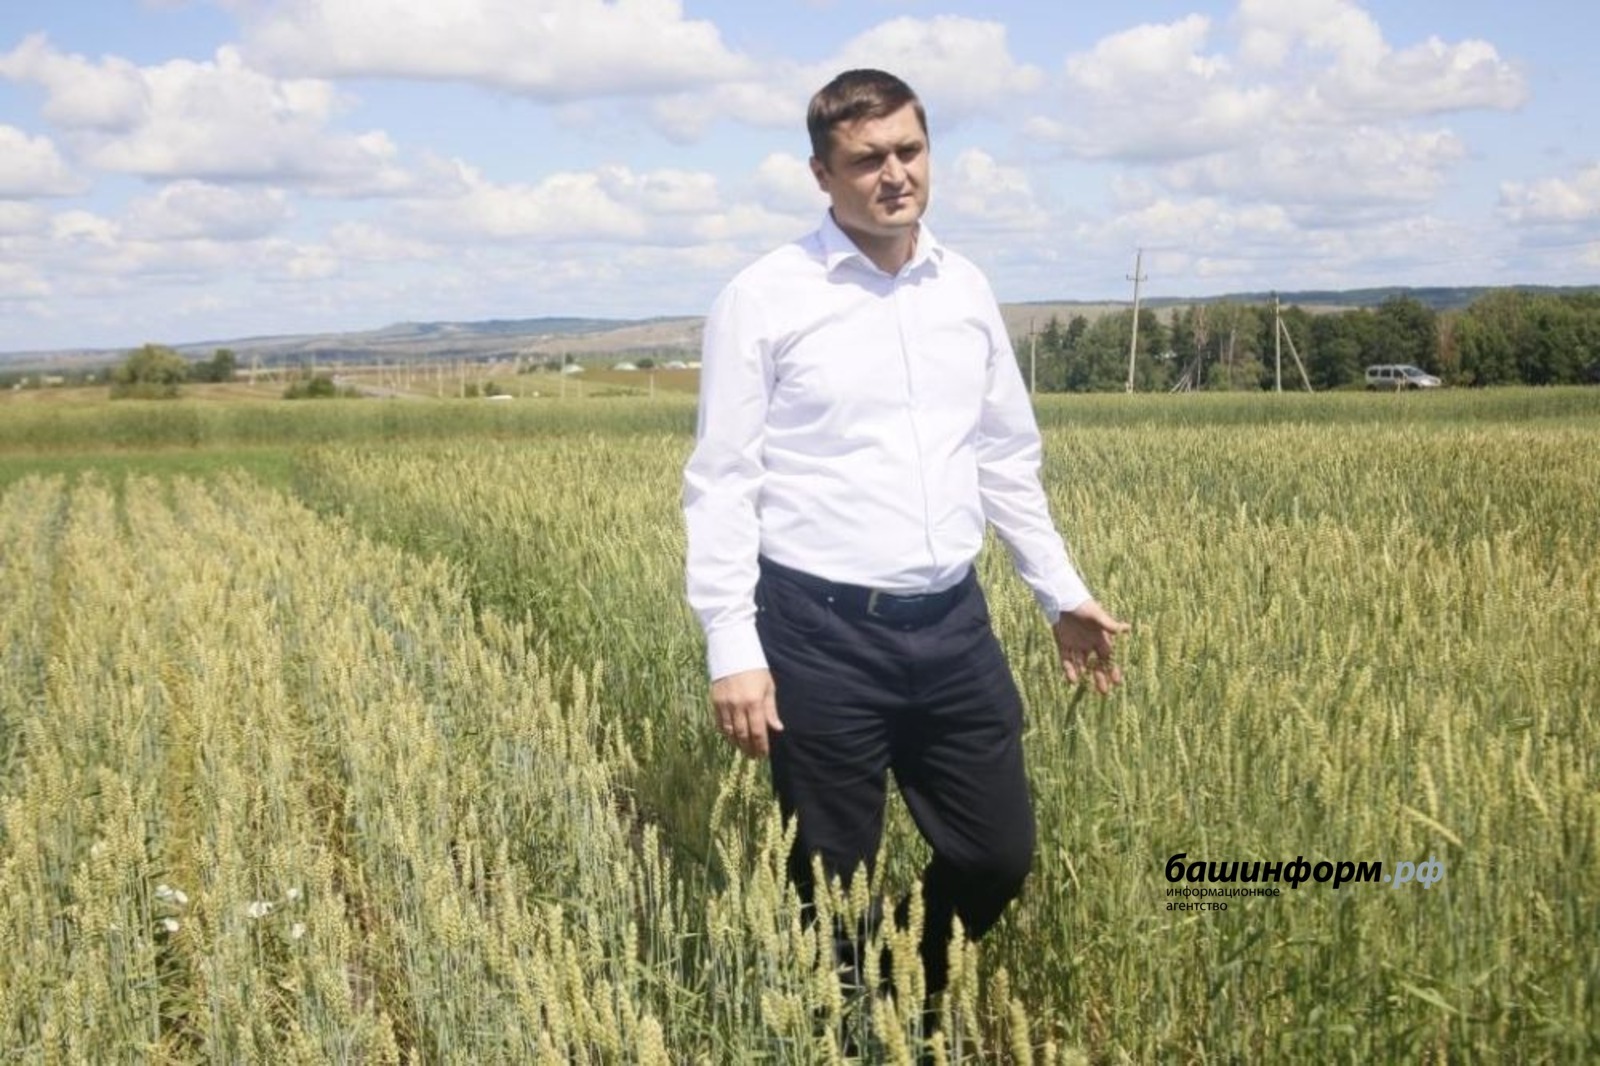 Рецепты высокого урожая кроются в поддержке руководства и работе самих аграриев - Ильшат Фазрахманов